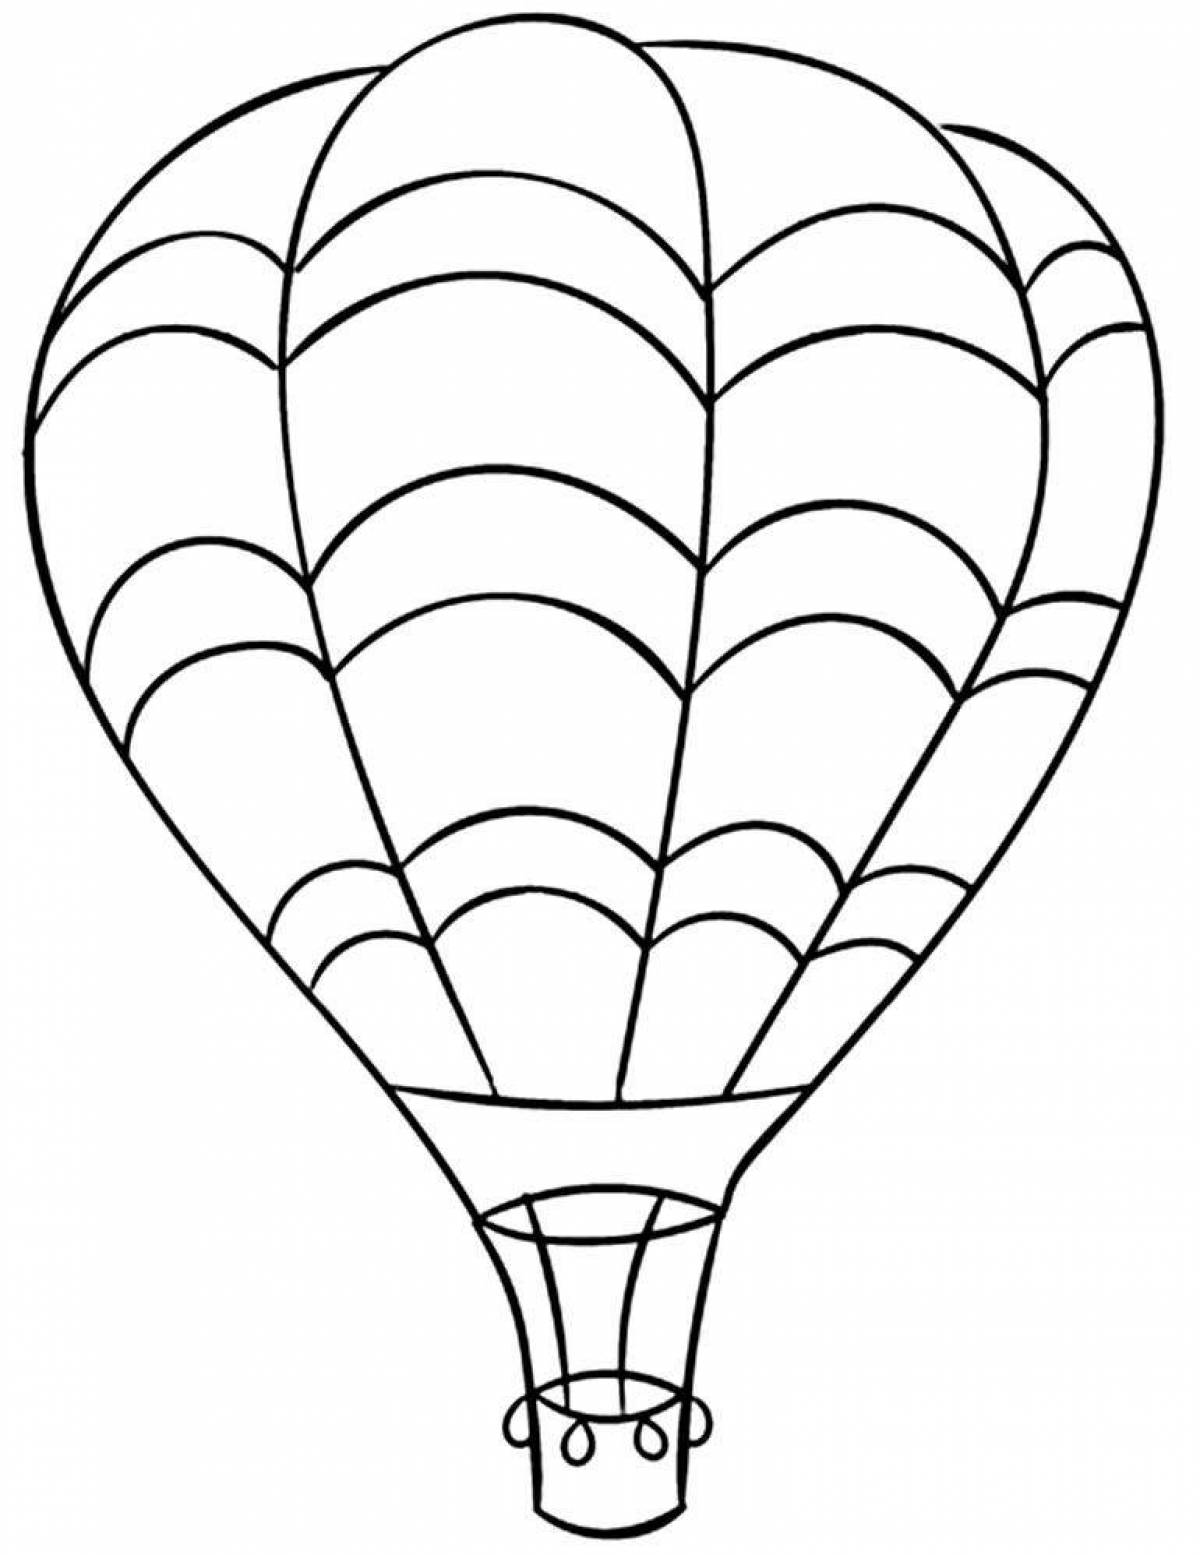 Раскраска славный воздушный шар с корзиной